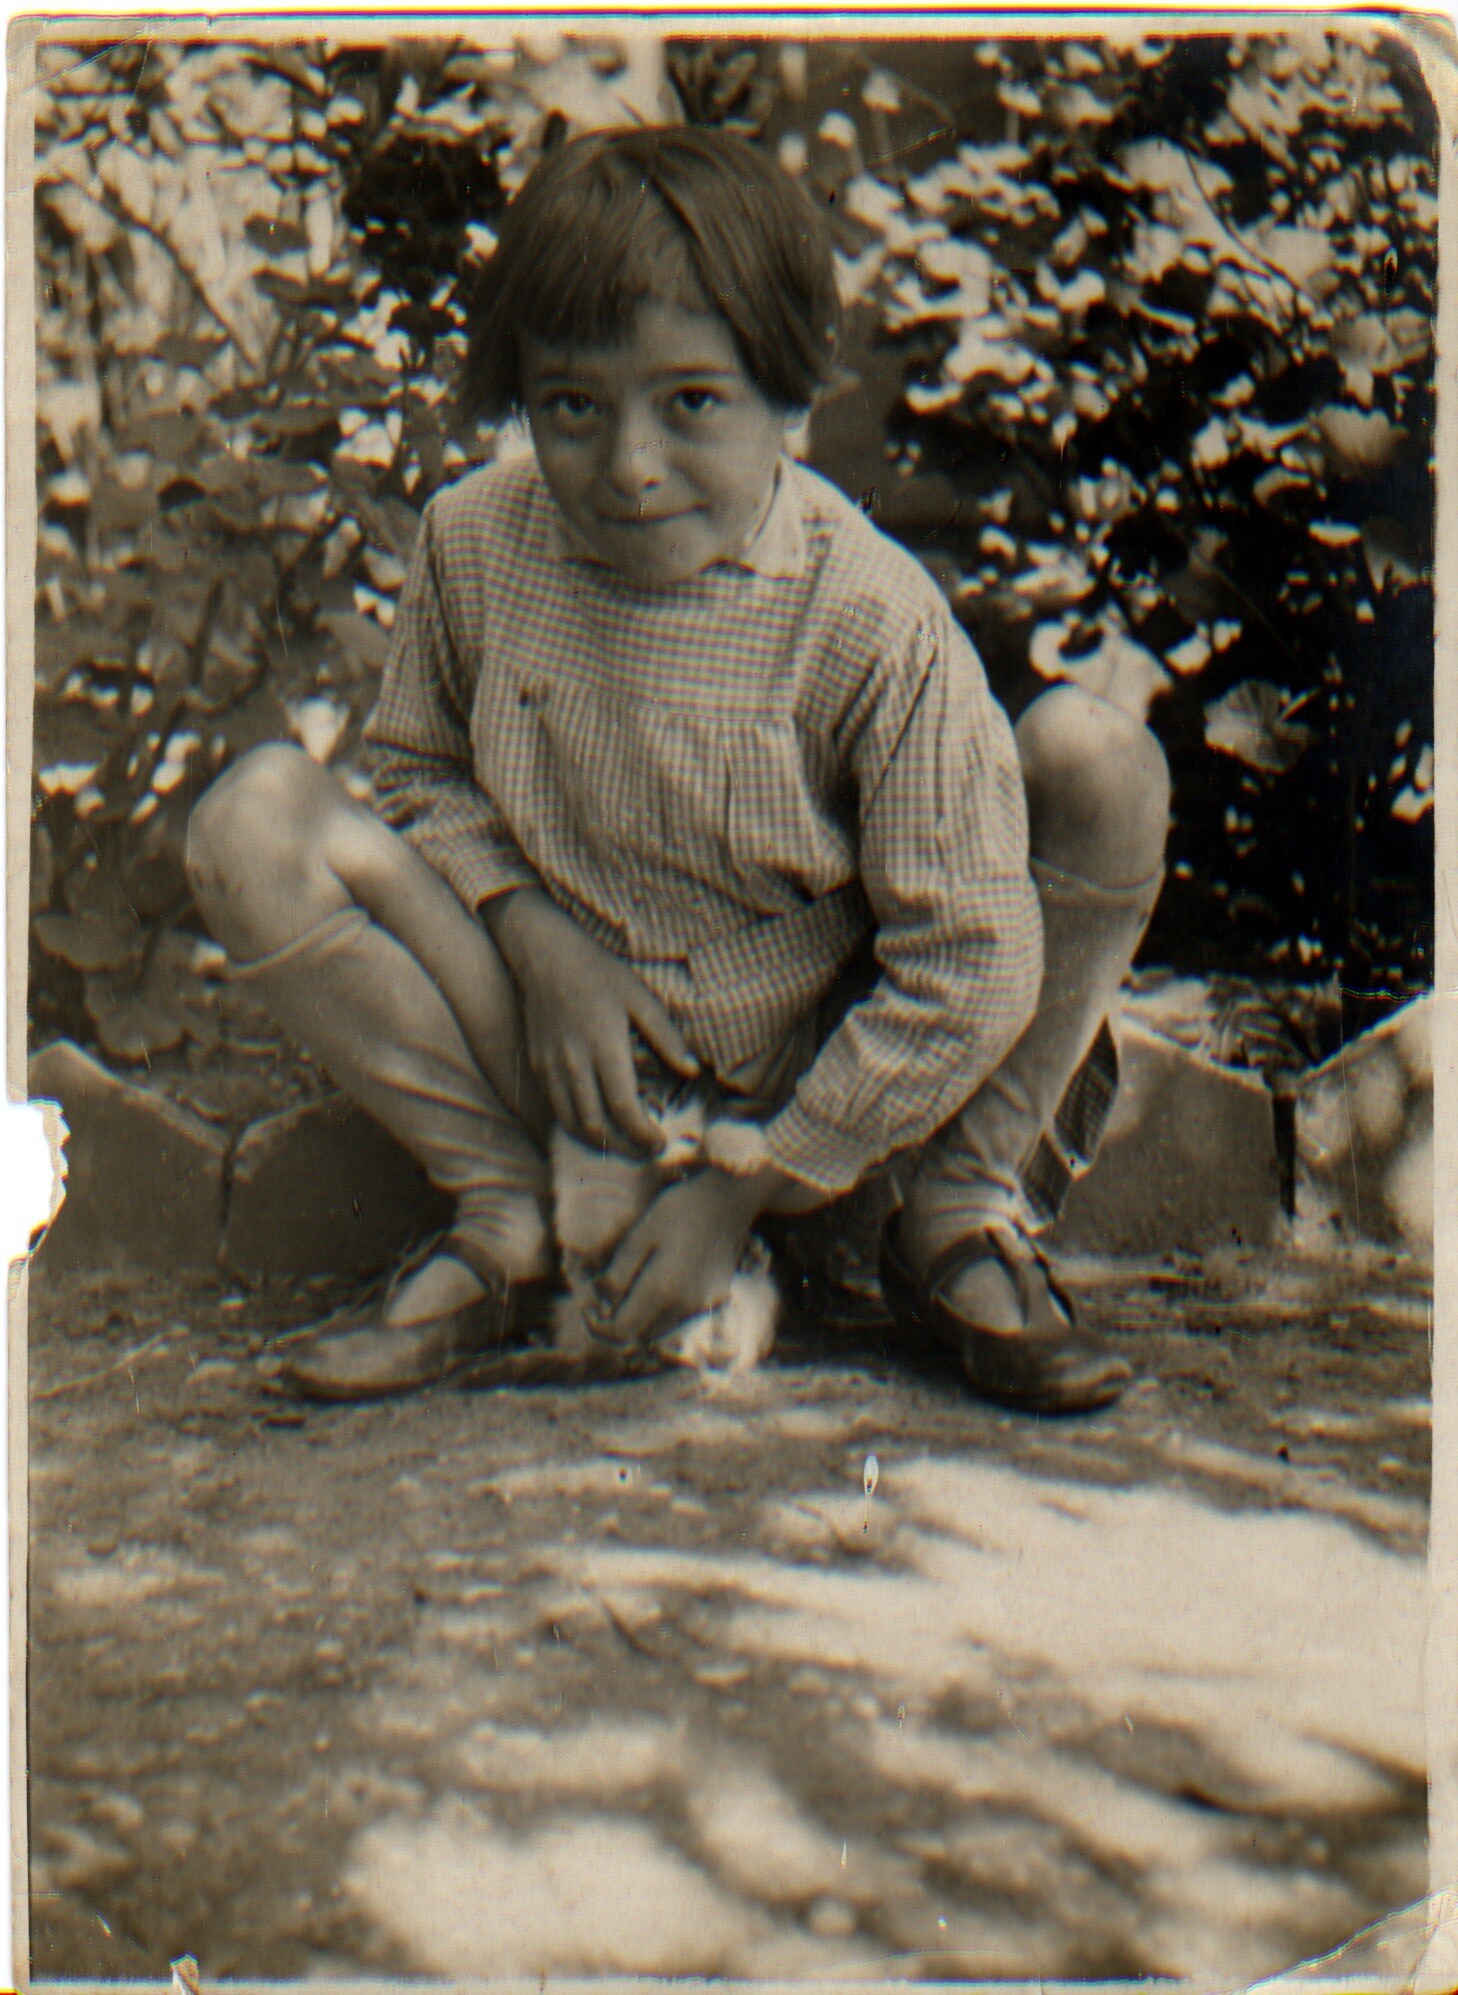 Ancienne photo noir et blanc prise dans les années 1920 (1925 ?)
Dans un jardin, devant un parterre d'arbustes, un petit garçon, les cheveux mi-longs à la Jeanne D'Arc et les yeux rieurs, âgé autour de 7 ans (mon père) est accroupi et regarde l'objectif de la caméra. Il tient un petit chaton assis sur le sol qui semble essayer de téter ses doigts. 
Mon père porte une blouse à carreaux, des sandales et des chaussette hautes.